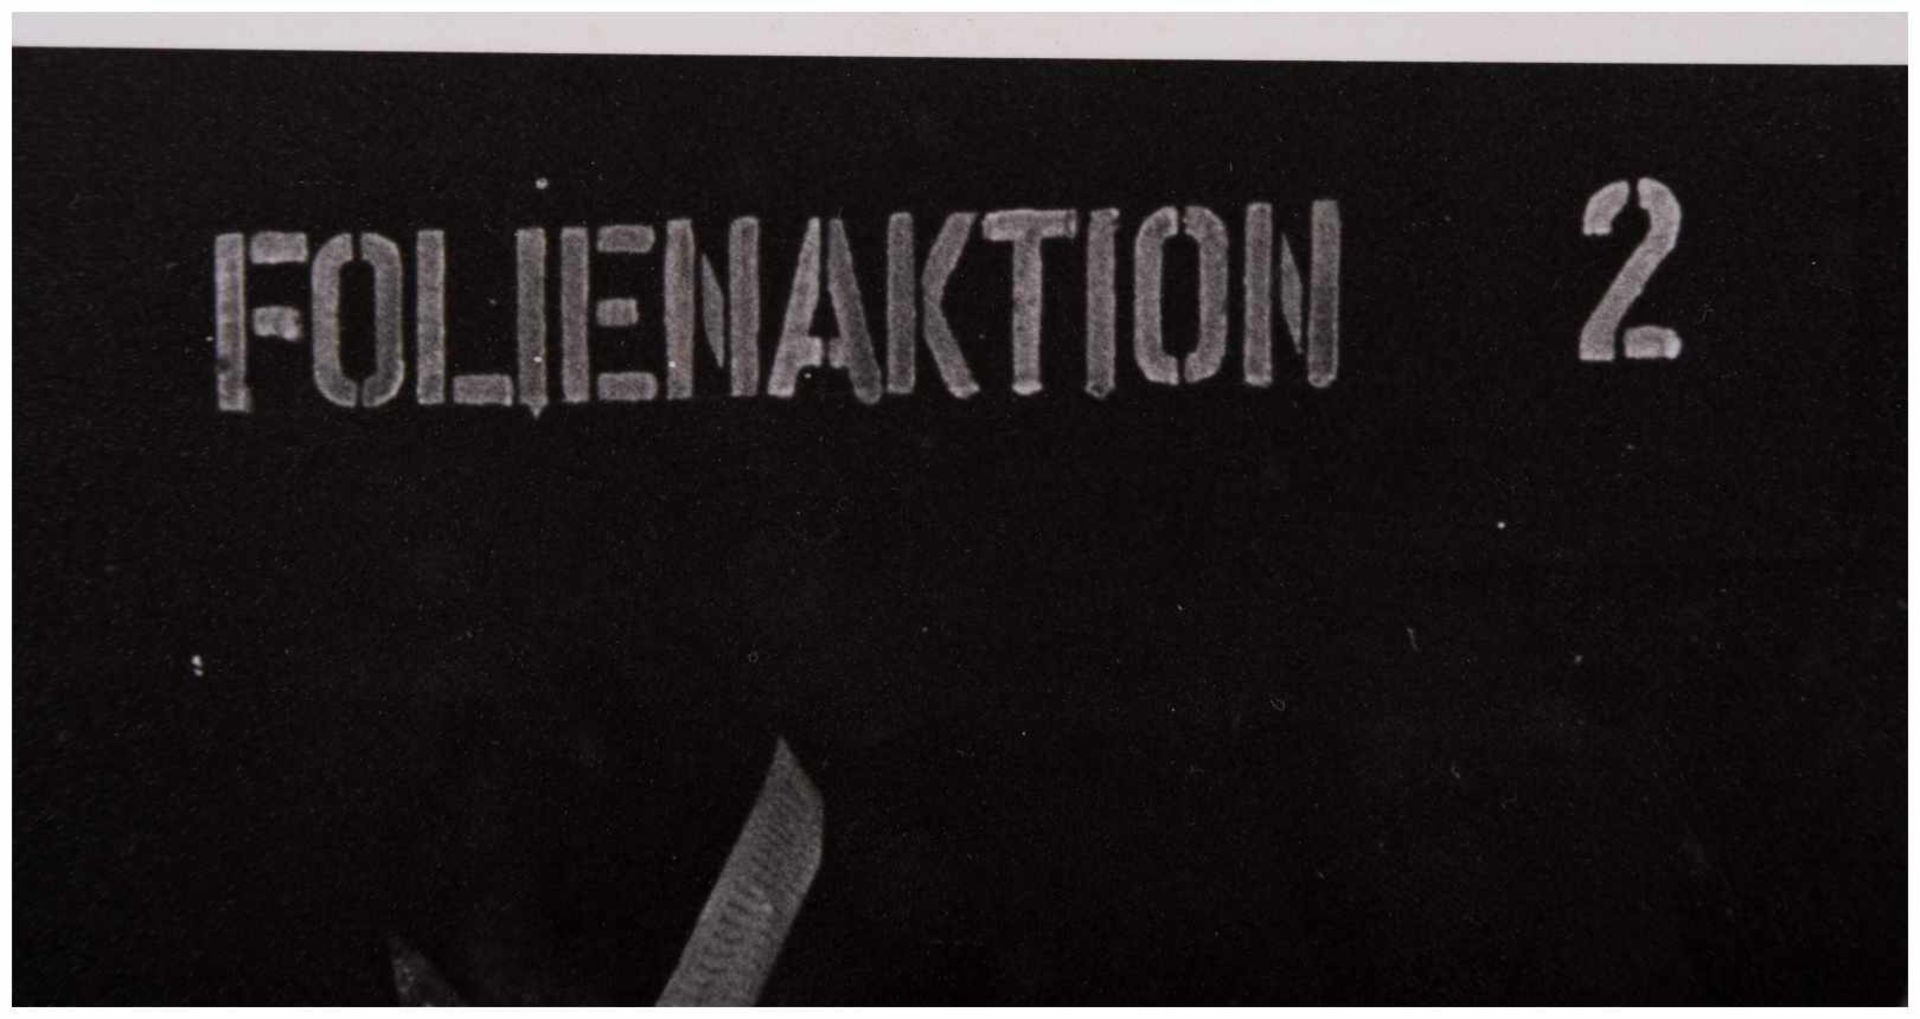 Klaus TOBER (1950-1994) - "Folienaktion 2" - Fotografie, 30,1 cm x 40,4 cm, - [...] - Image 6 of 6